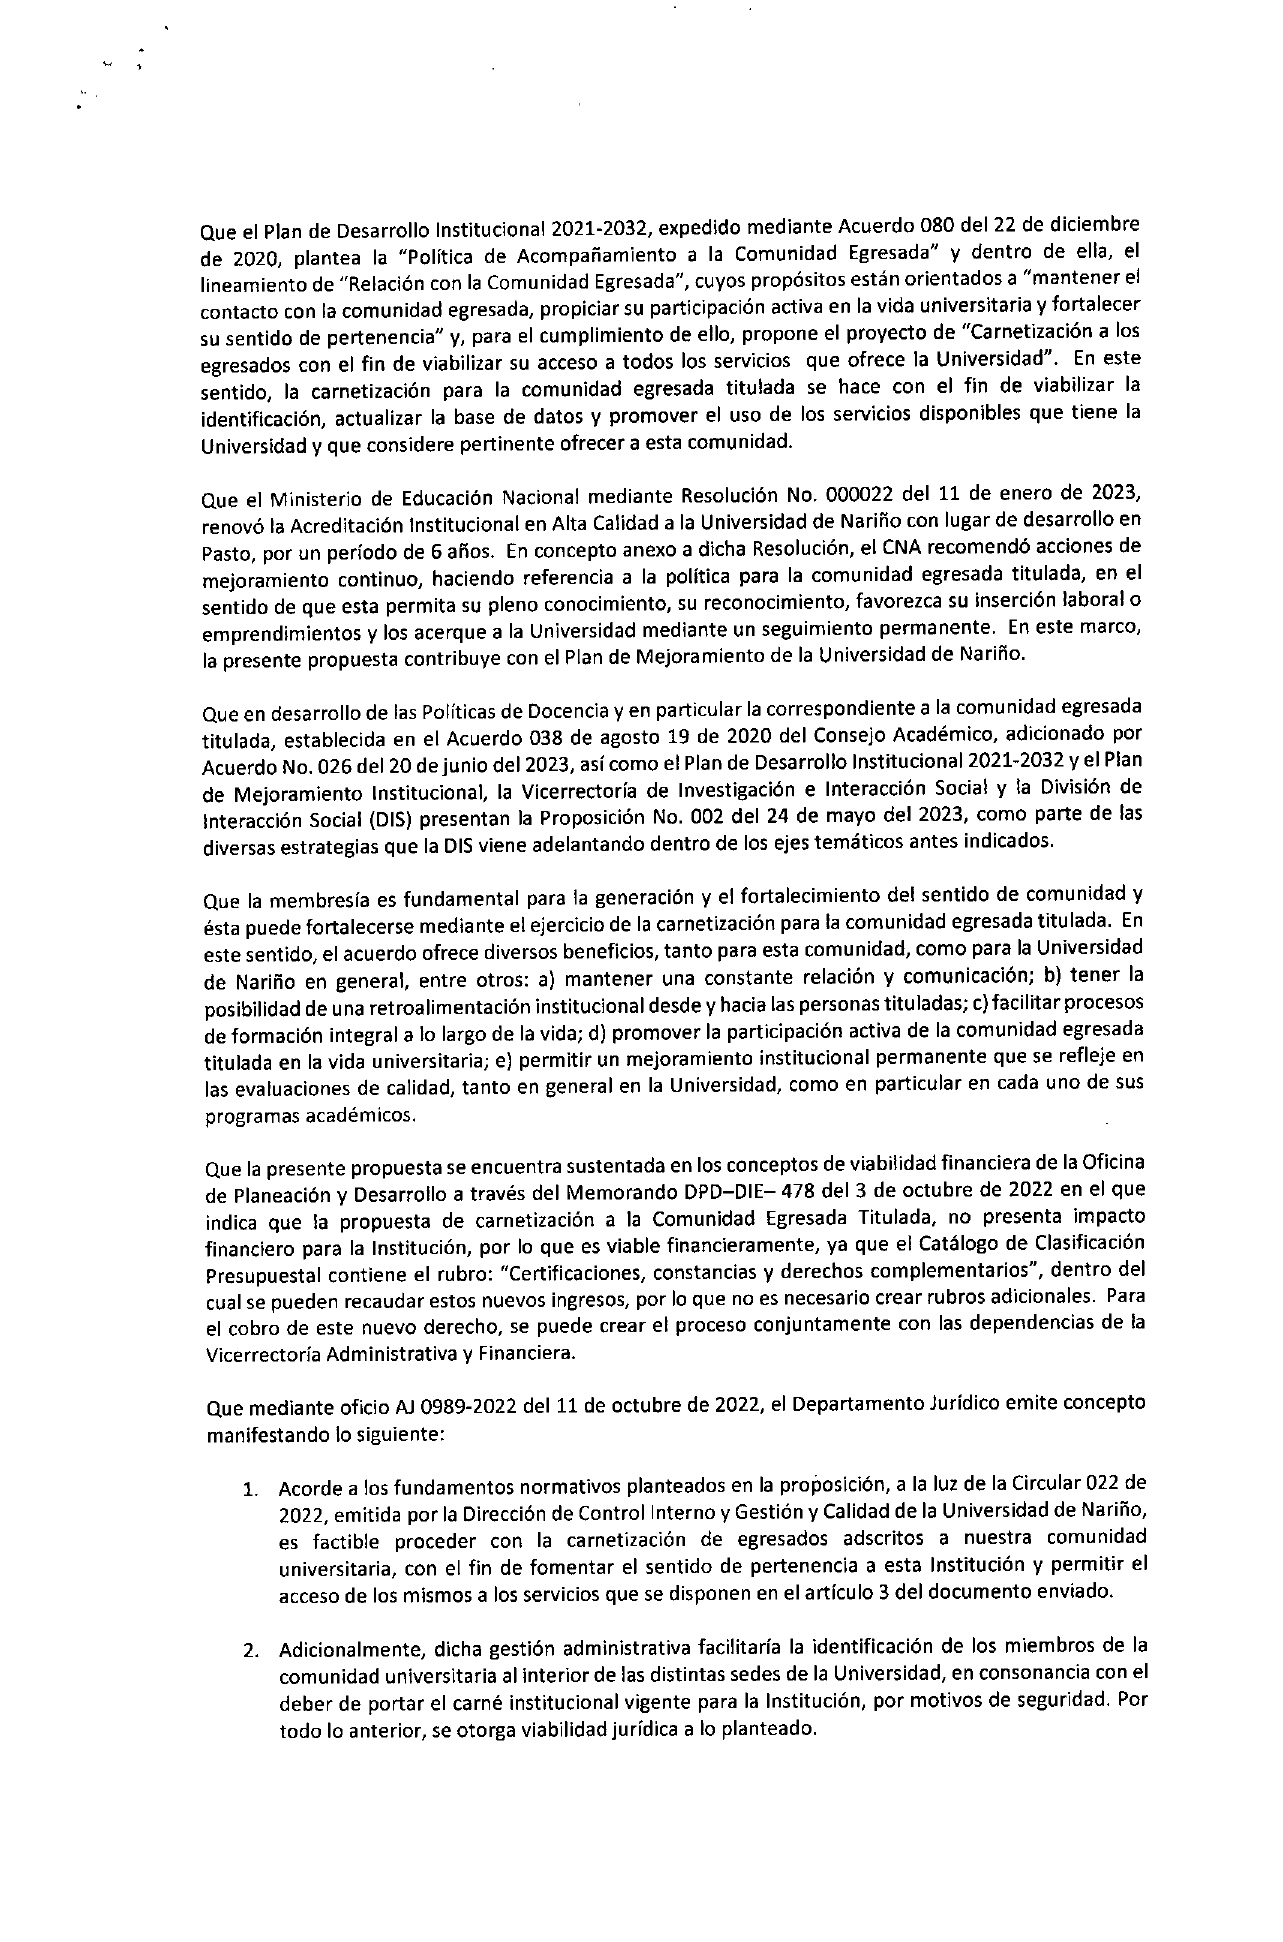 UDENAR-PERIODICO-032-carnetización-egresados_page-0002